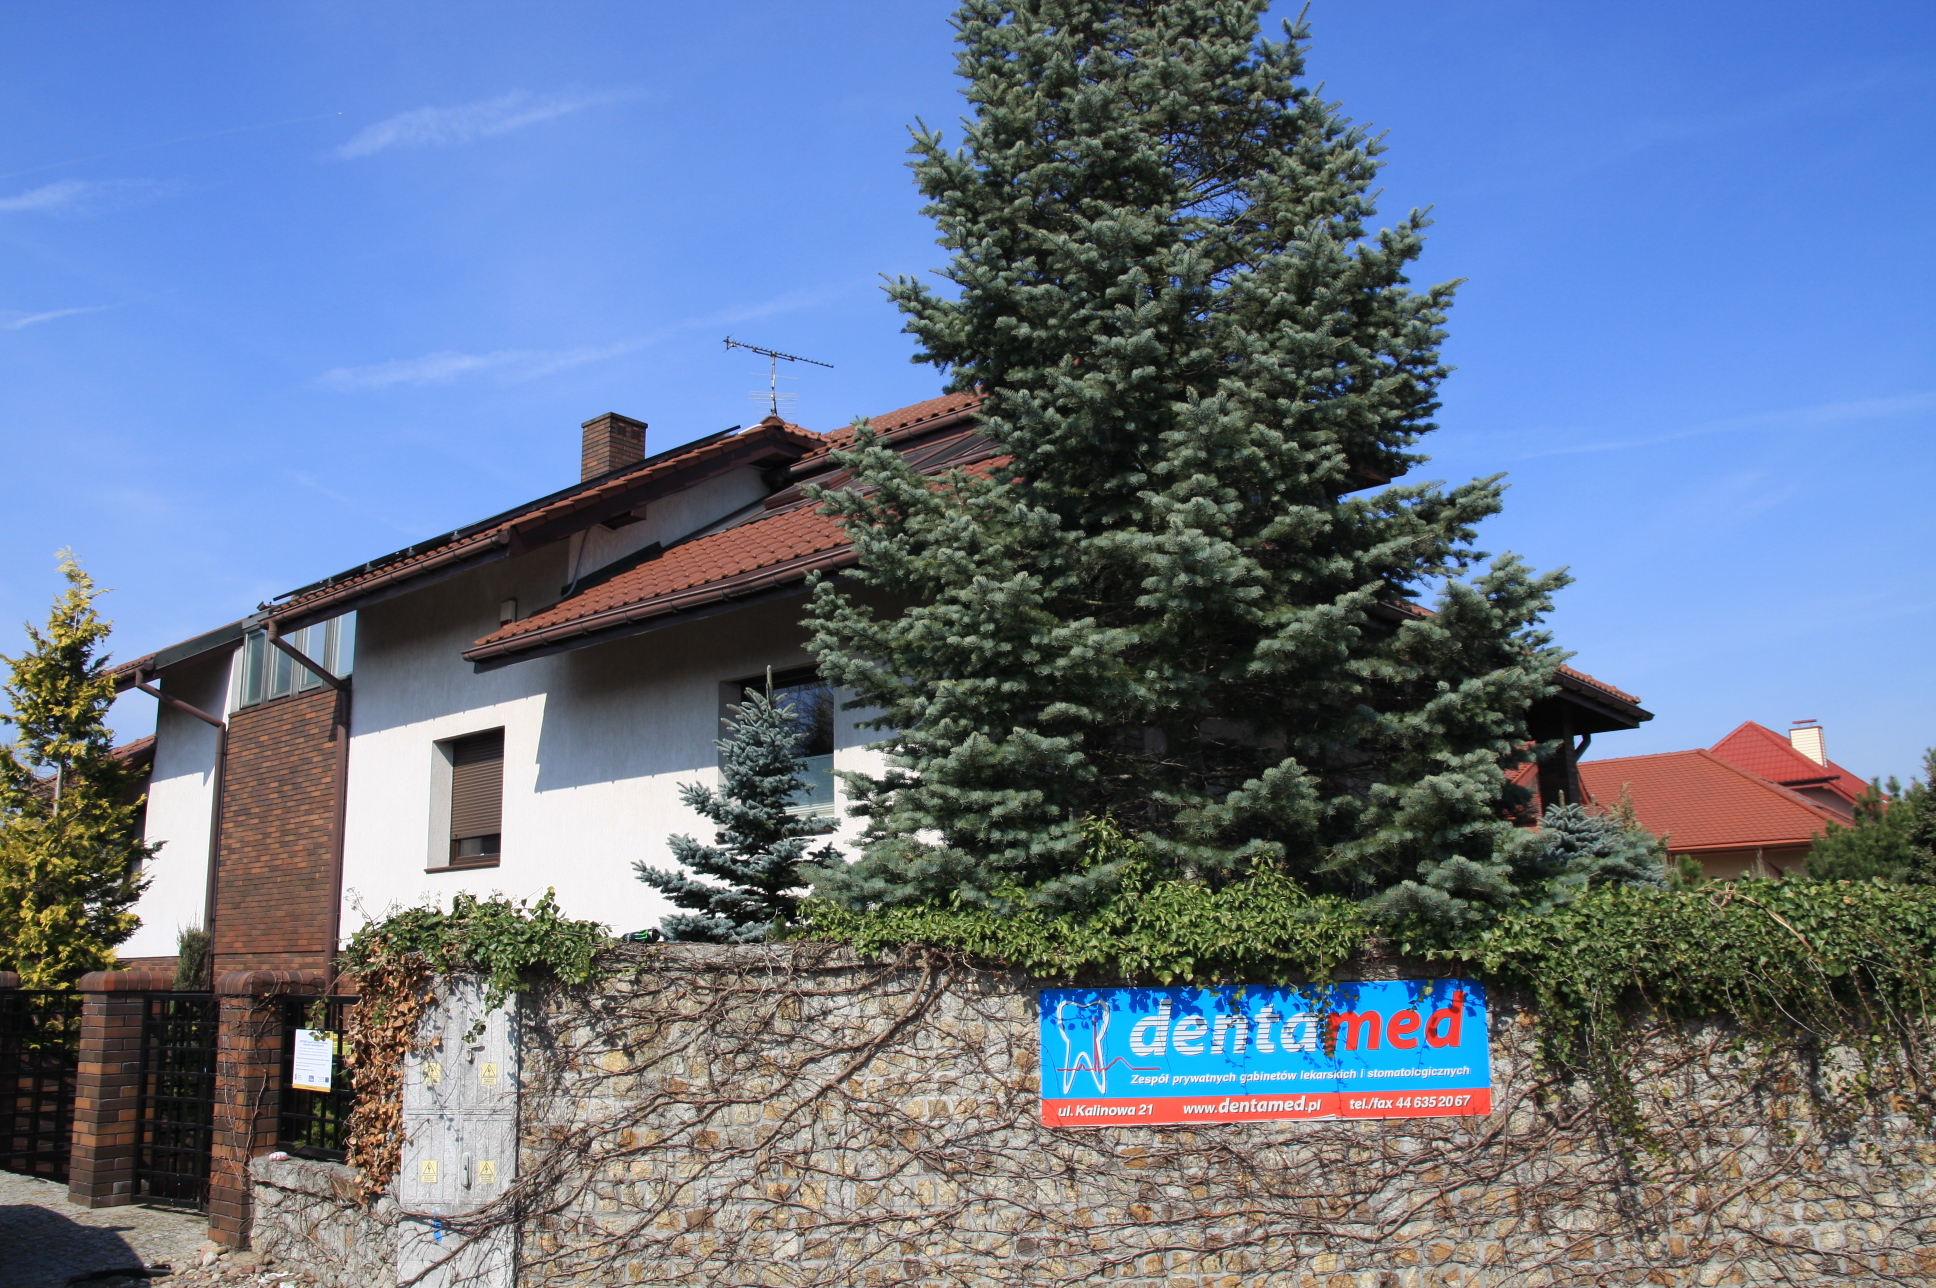 Widok na gabinet stomatologiczny Denta-Med z widocznymi na dachu panelami fotowoltaicznymi